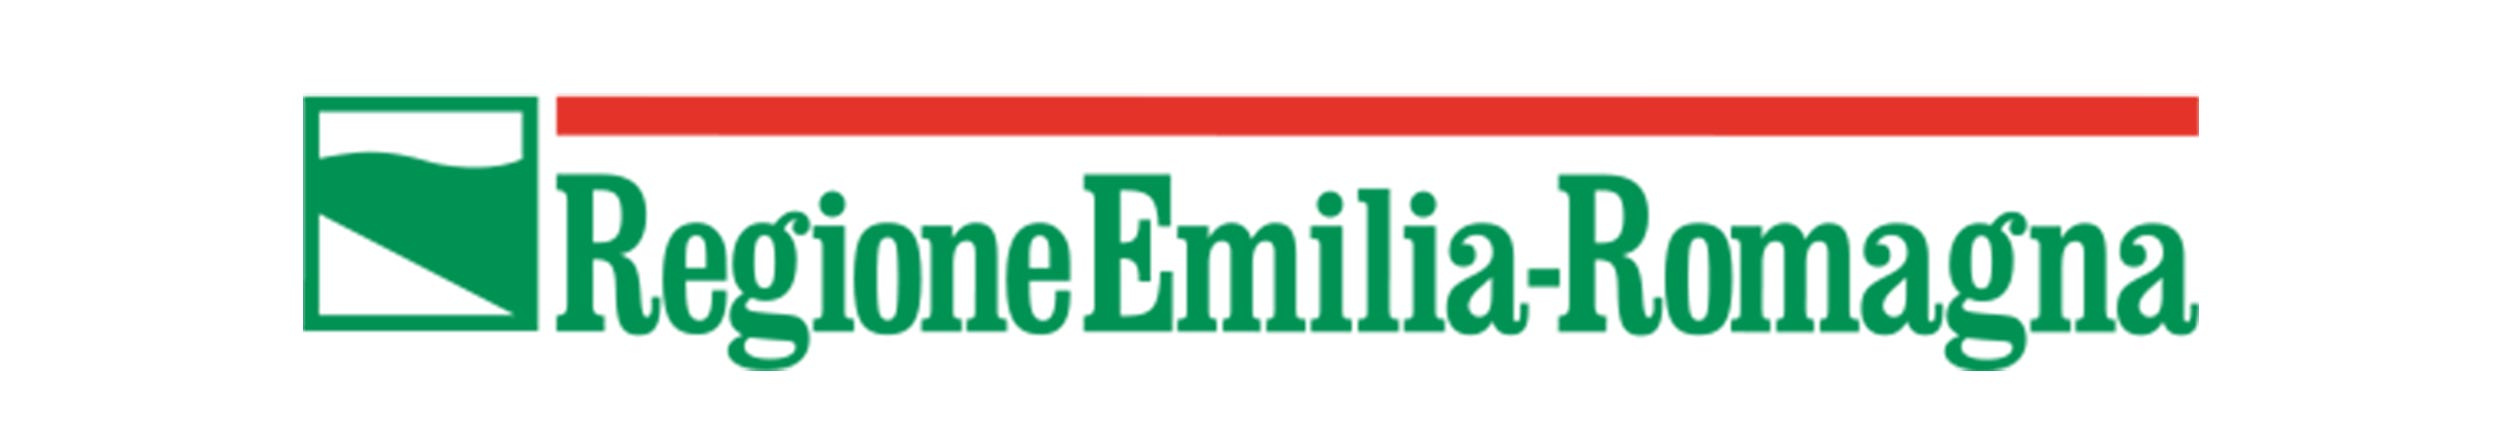 emilia-romagna